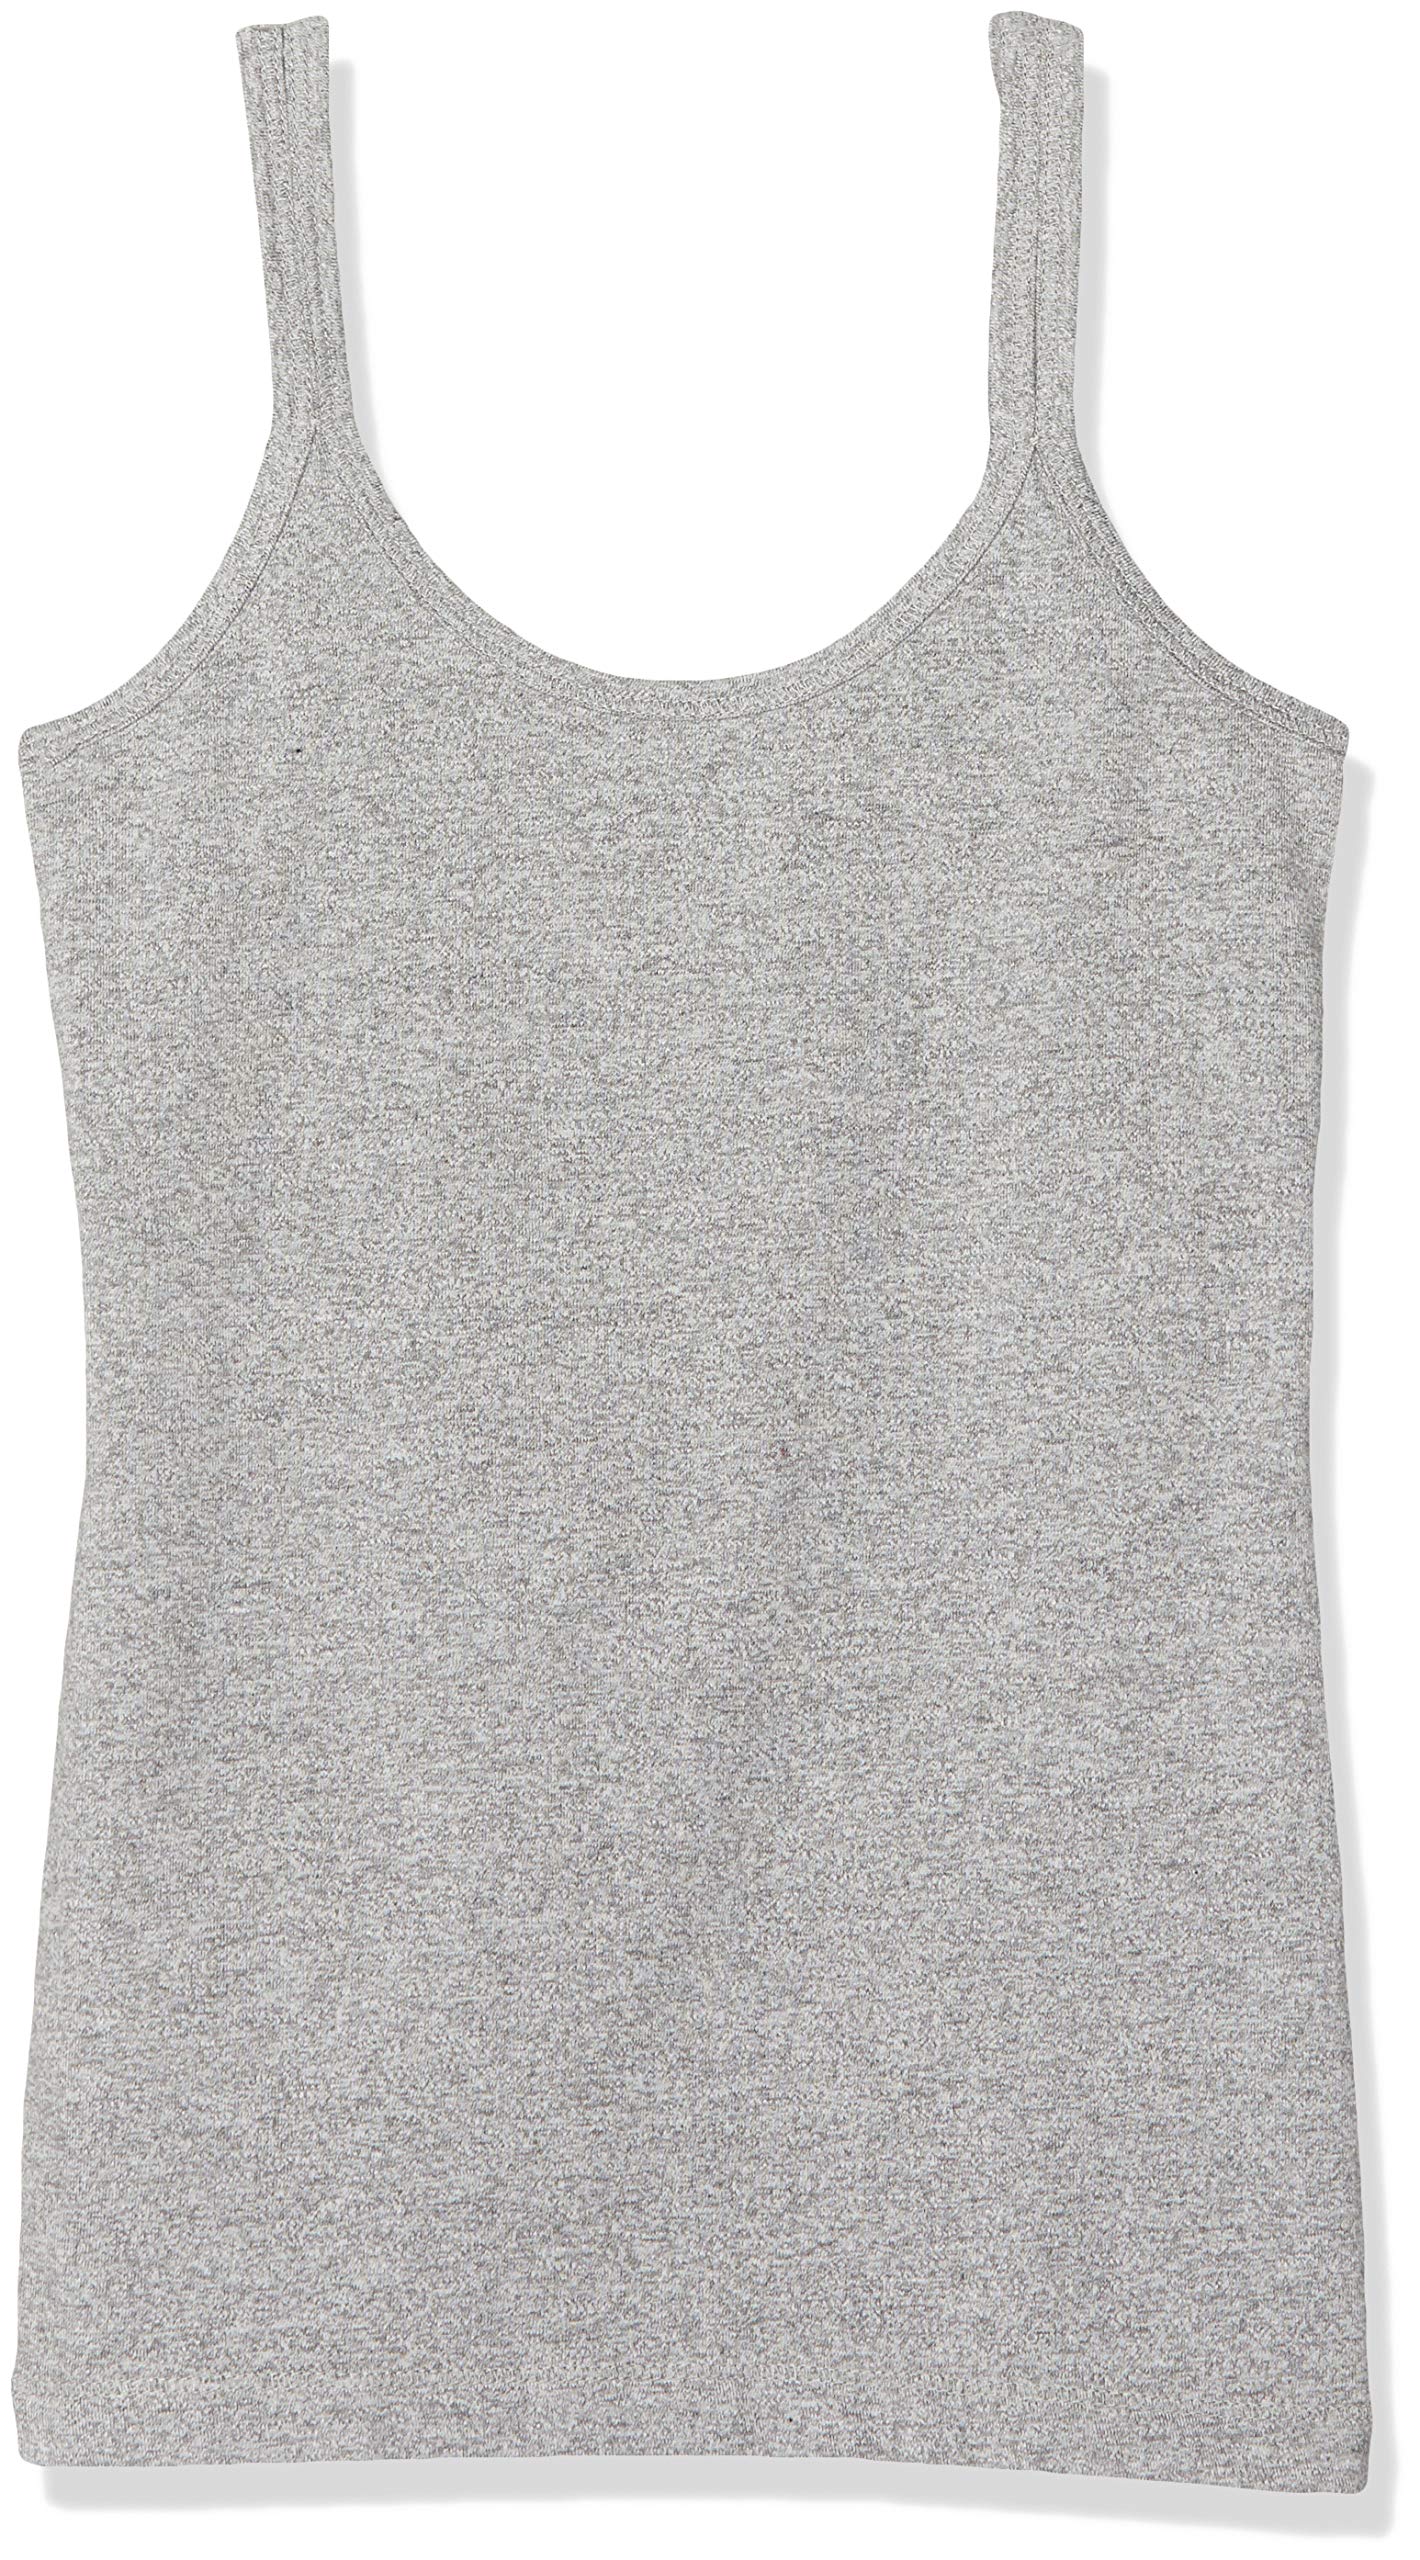 Claesen's Mädchen Girls Singlet Unterhemd, Grau (Grey 007), 164 (Herstellergröße: 164/170)